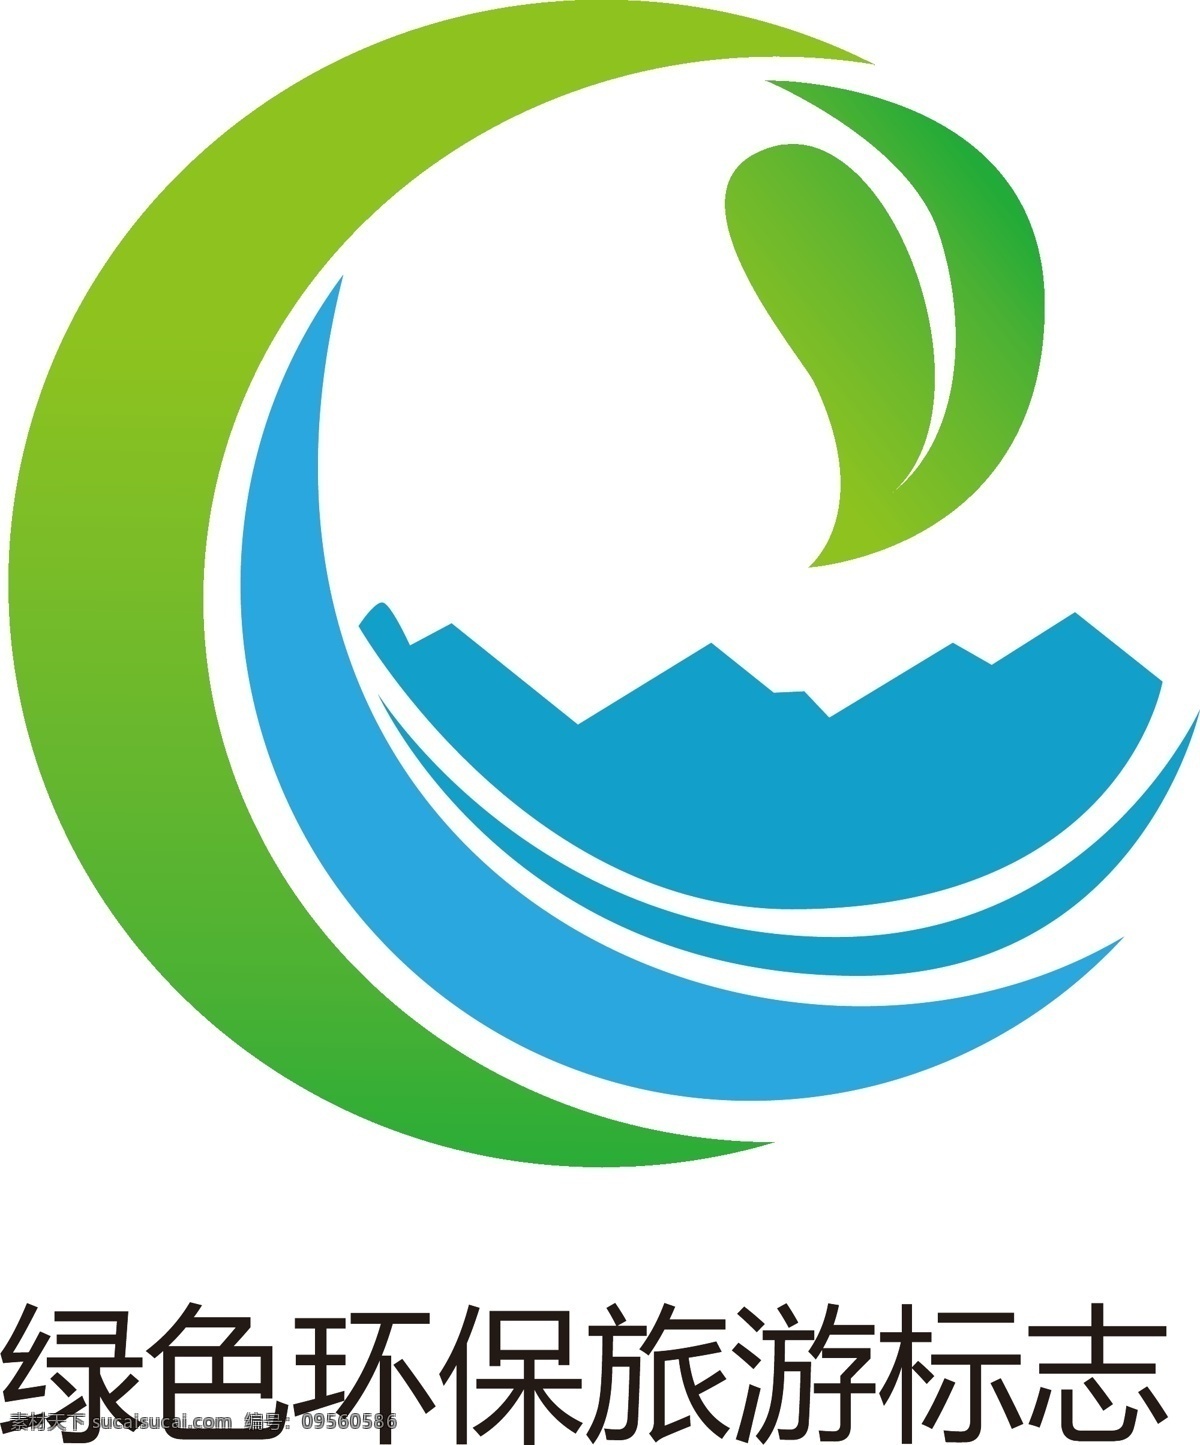 绿色环保 旅游 标志 绿色 logo 标志设计 城市旅游 环保 保护水资源